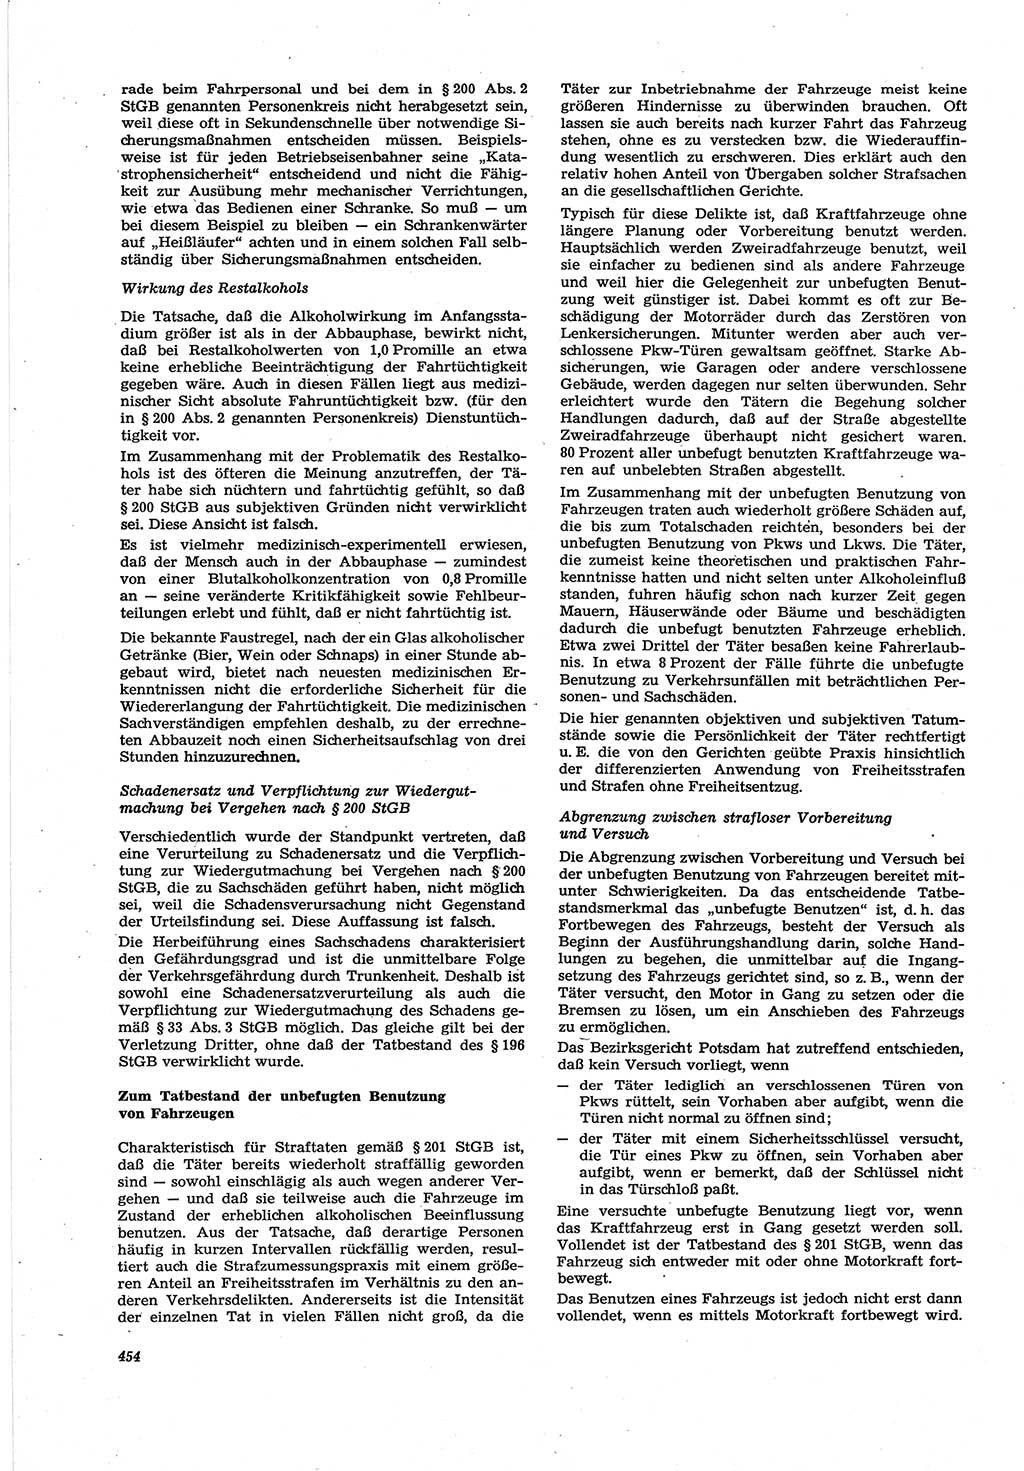 Neue Justiz (NJ), Zeitschrift für Recht und Rechtswissenschaft [Deutsche Demokratische Republik (DDR)], 30. Jahrgang 1976, Seite 454 (NJ DDR 1976, S. 454)